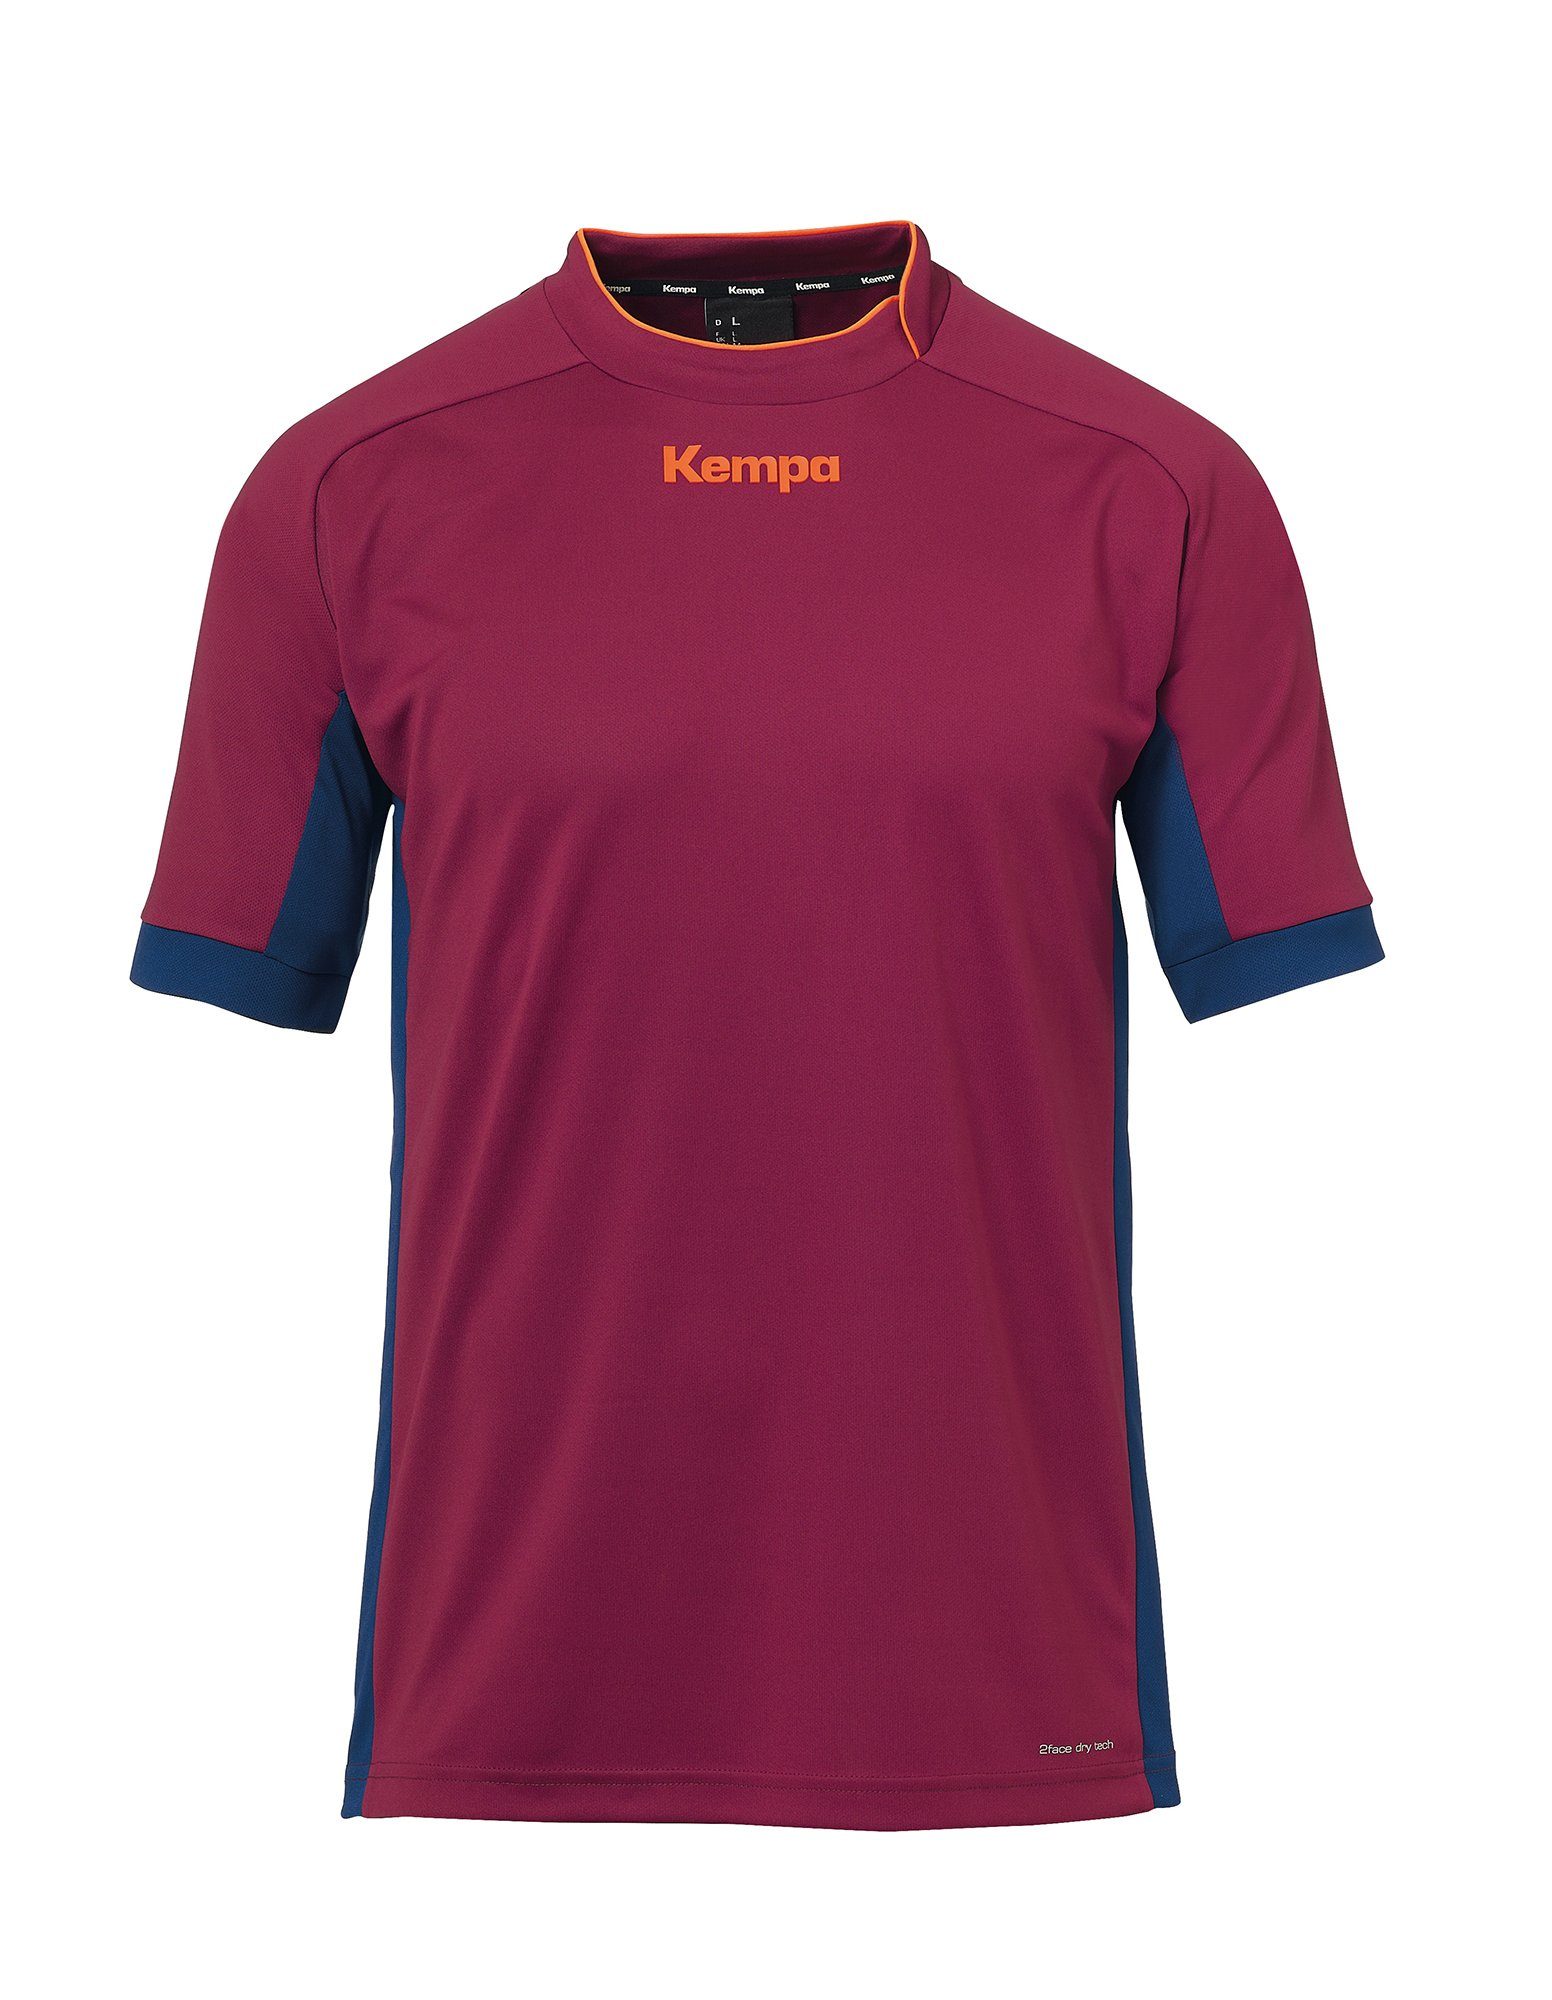 Kempa Trainingsshirt Kempa Shirt PRIME blau/deep TRIKOT rot deep schnelltrocknend